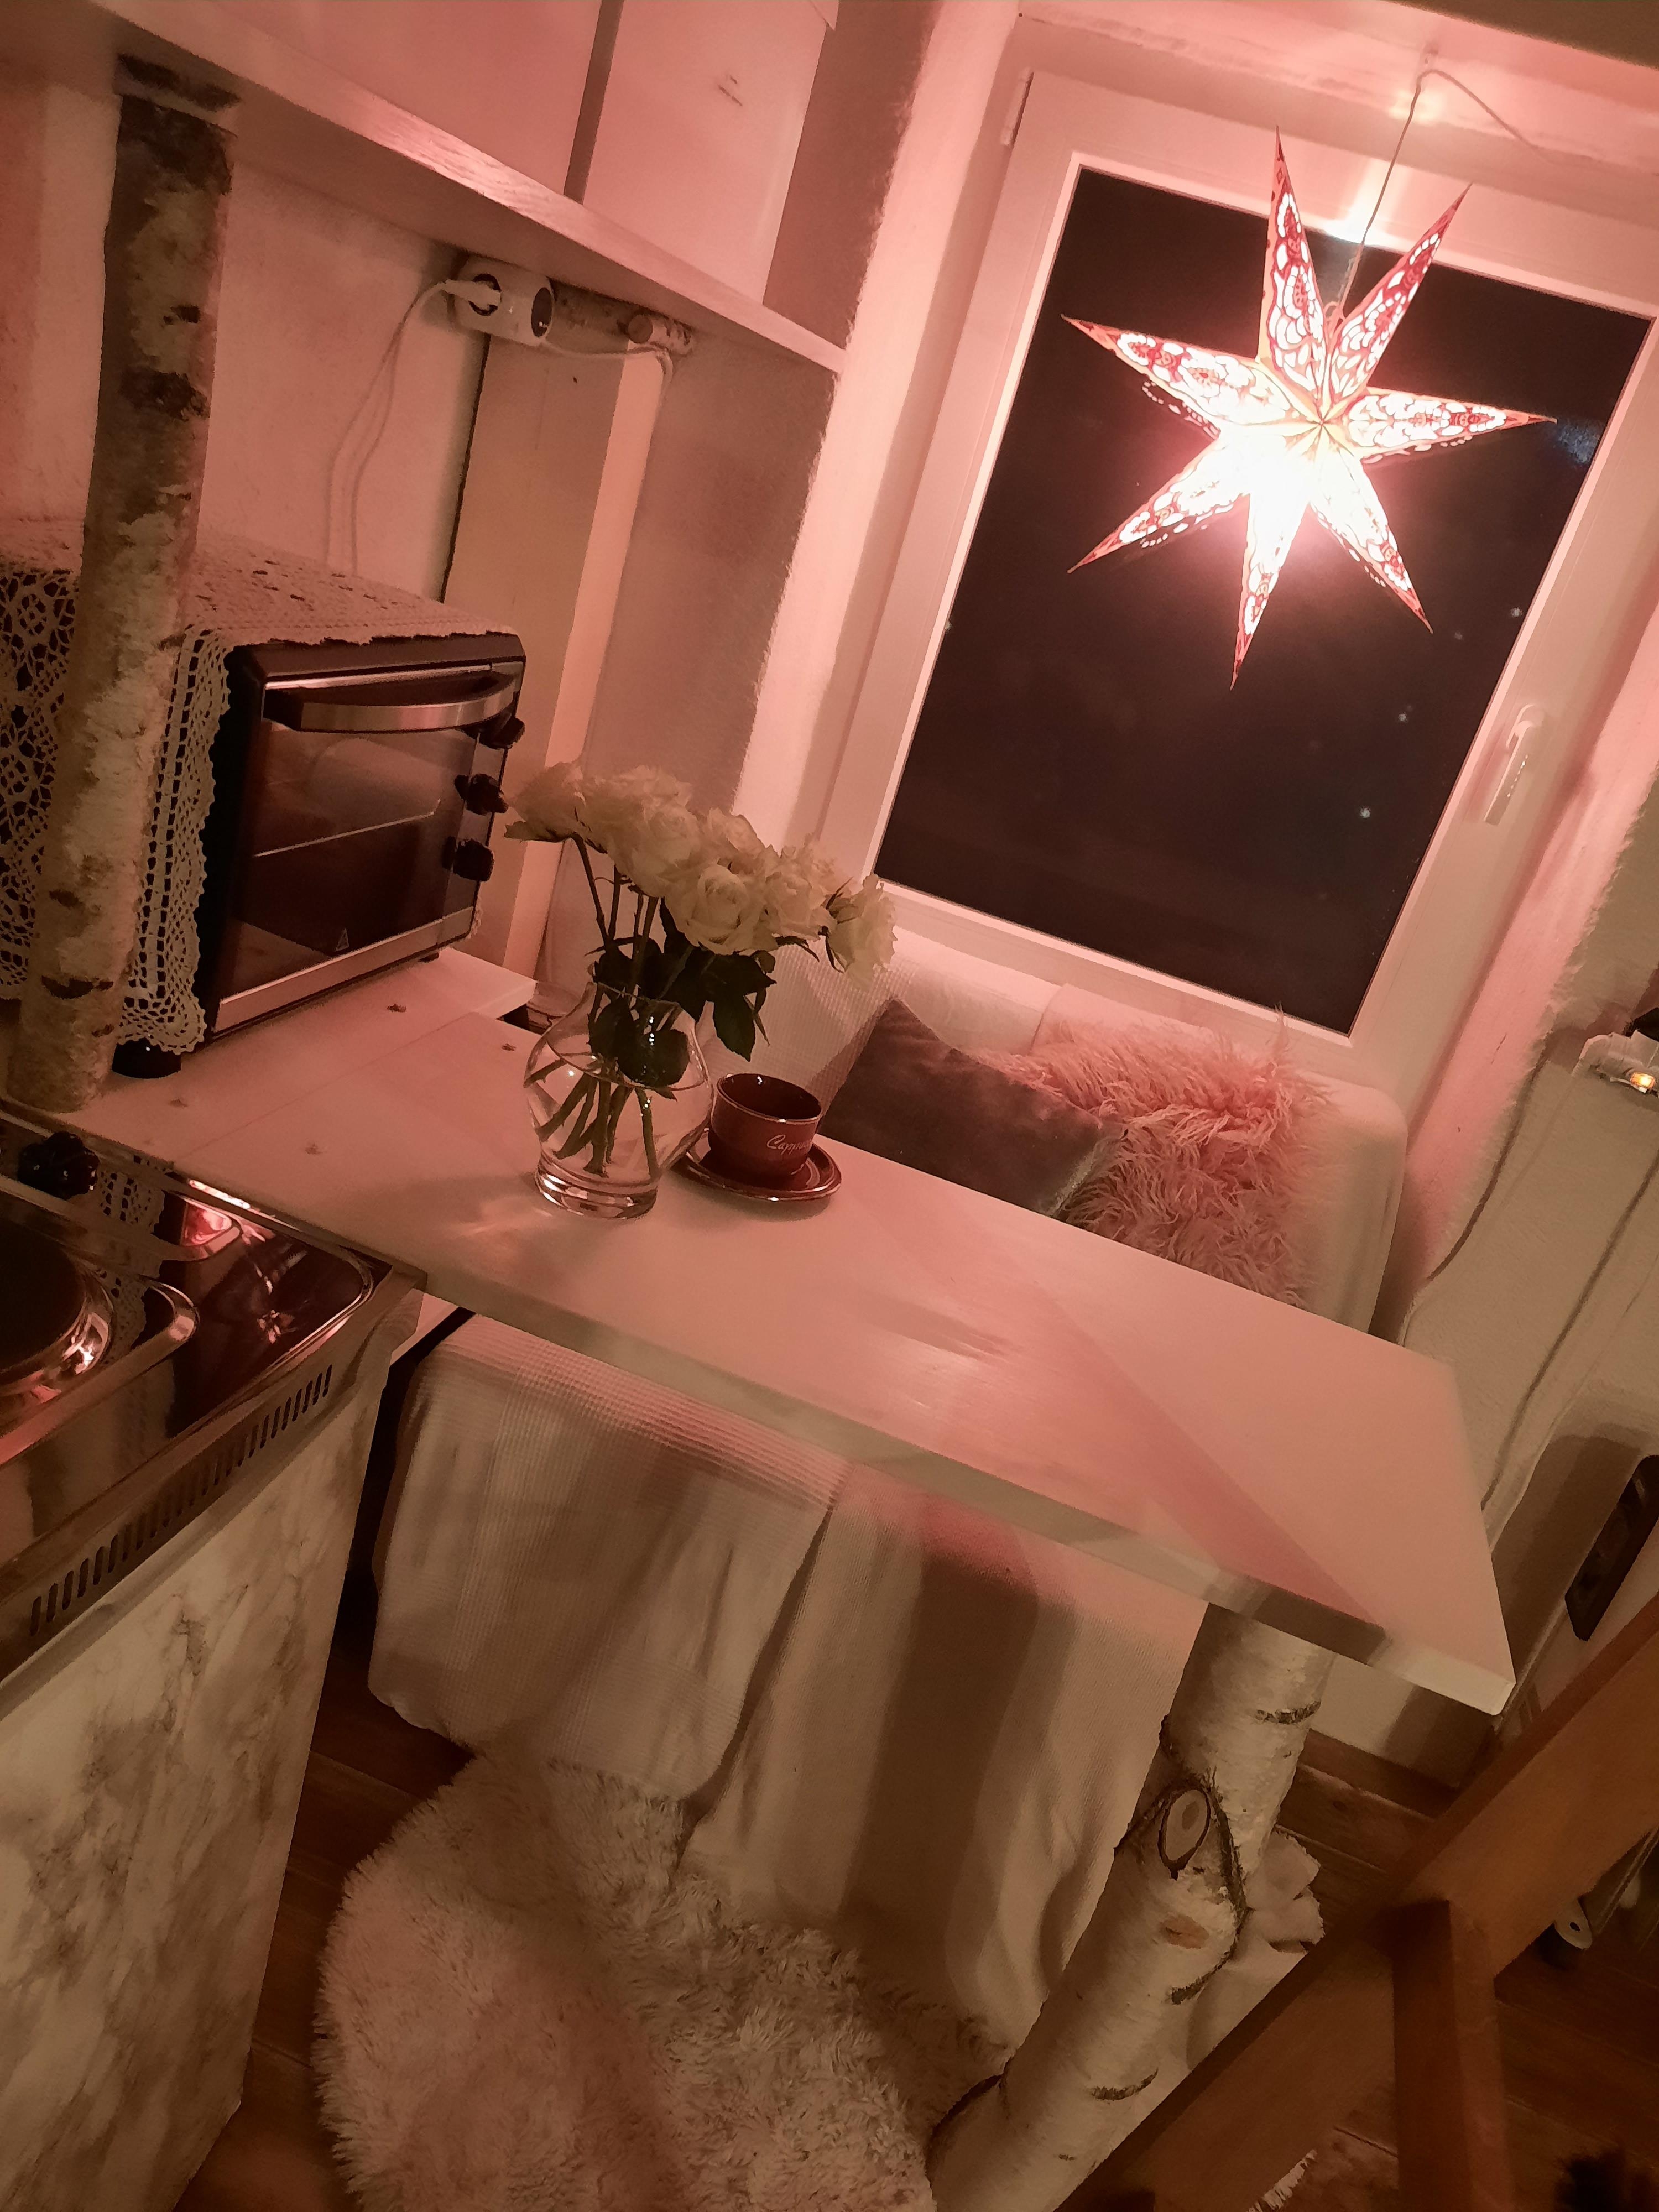 Meine kleine Werkstattwohnung...
#wohnung #werkstatt #weihnachten #klapptisch #diy #selbstgebaut #klapptischdiy #tisch #platzsparend #baumstamm #weiß #couchstyle 